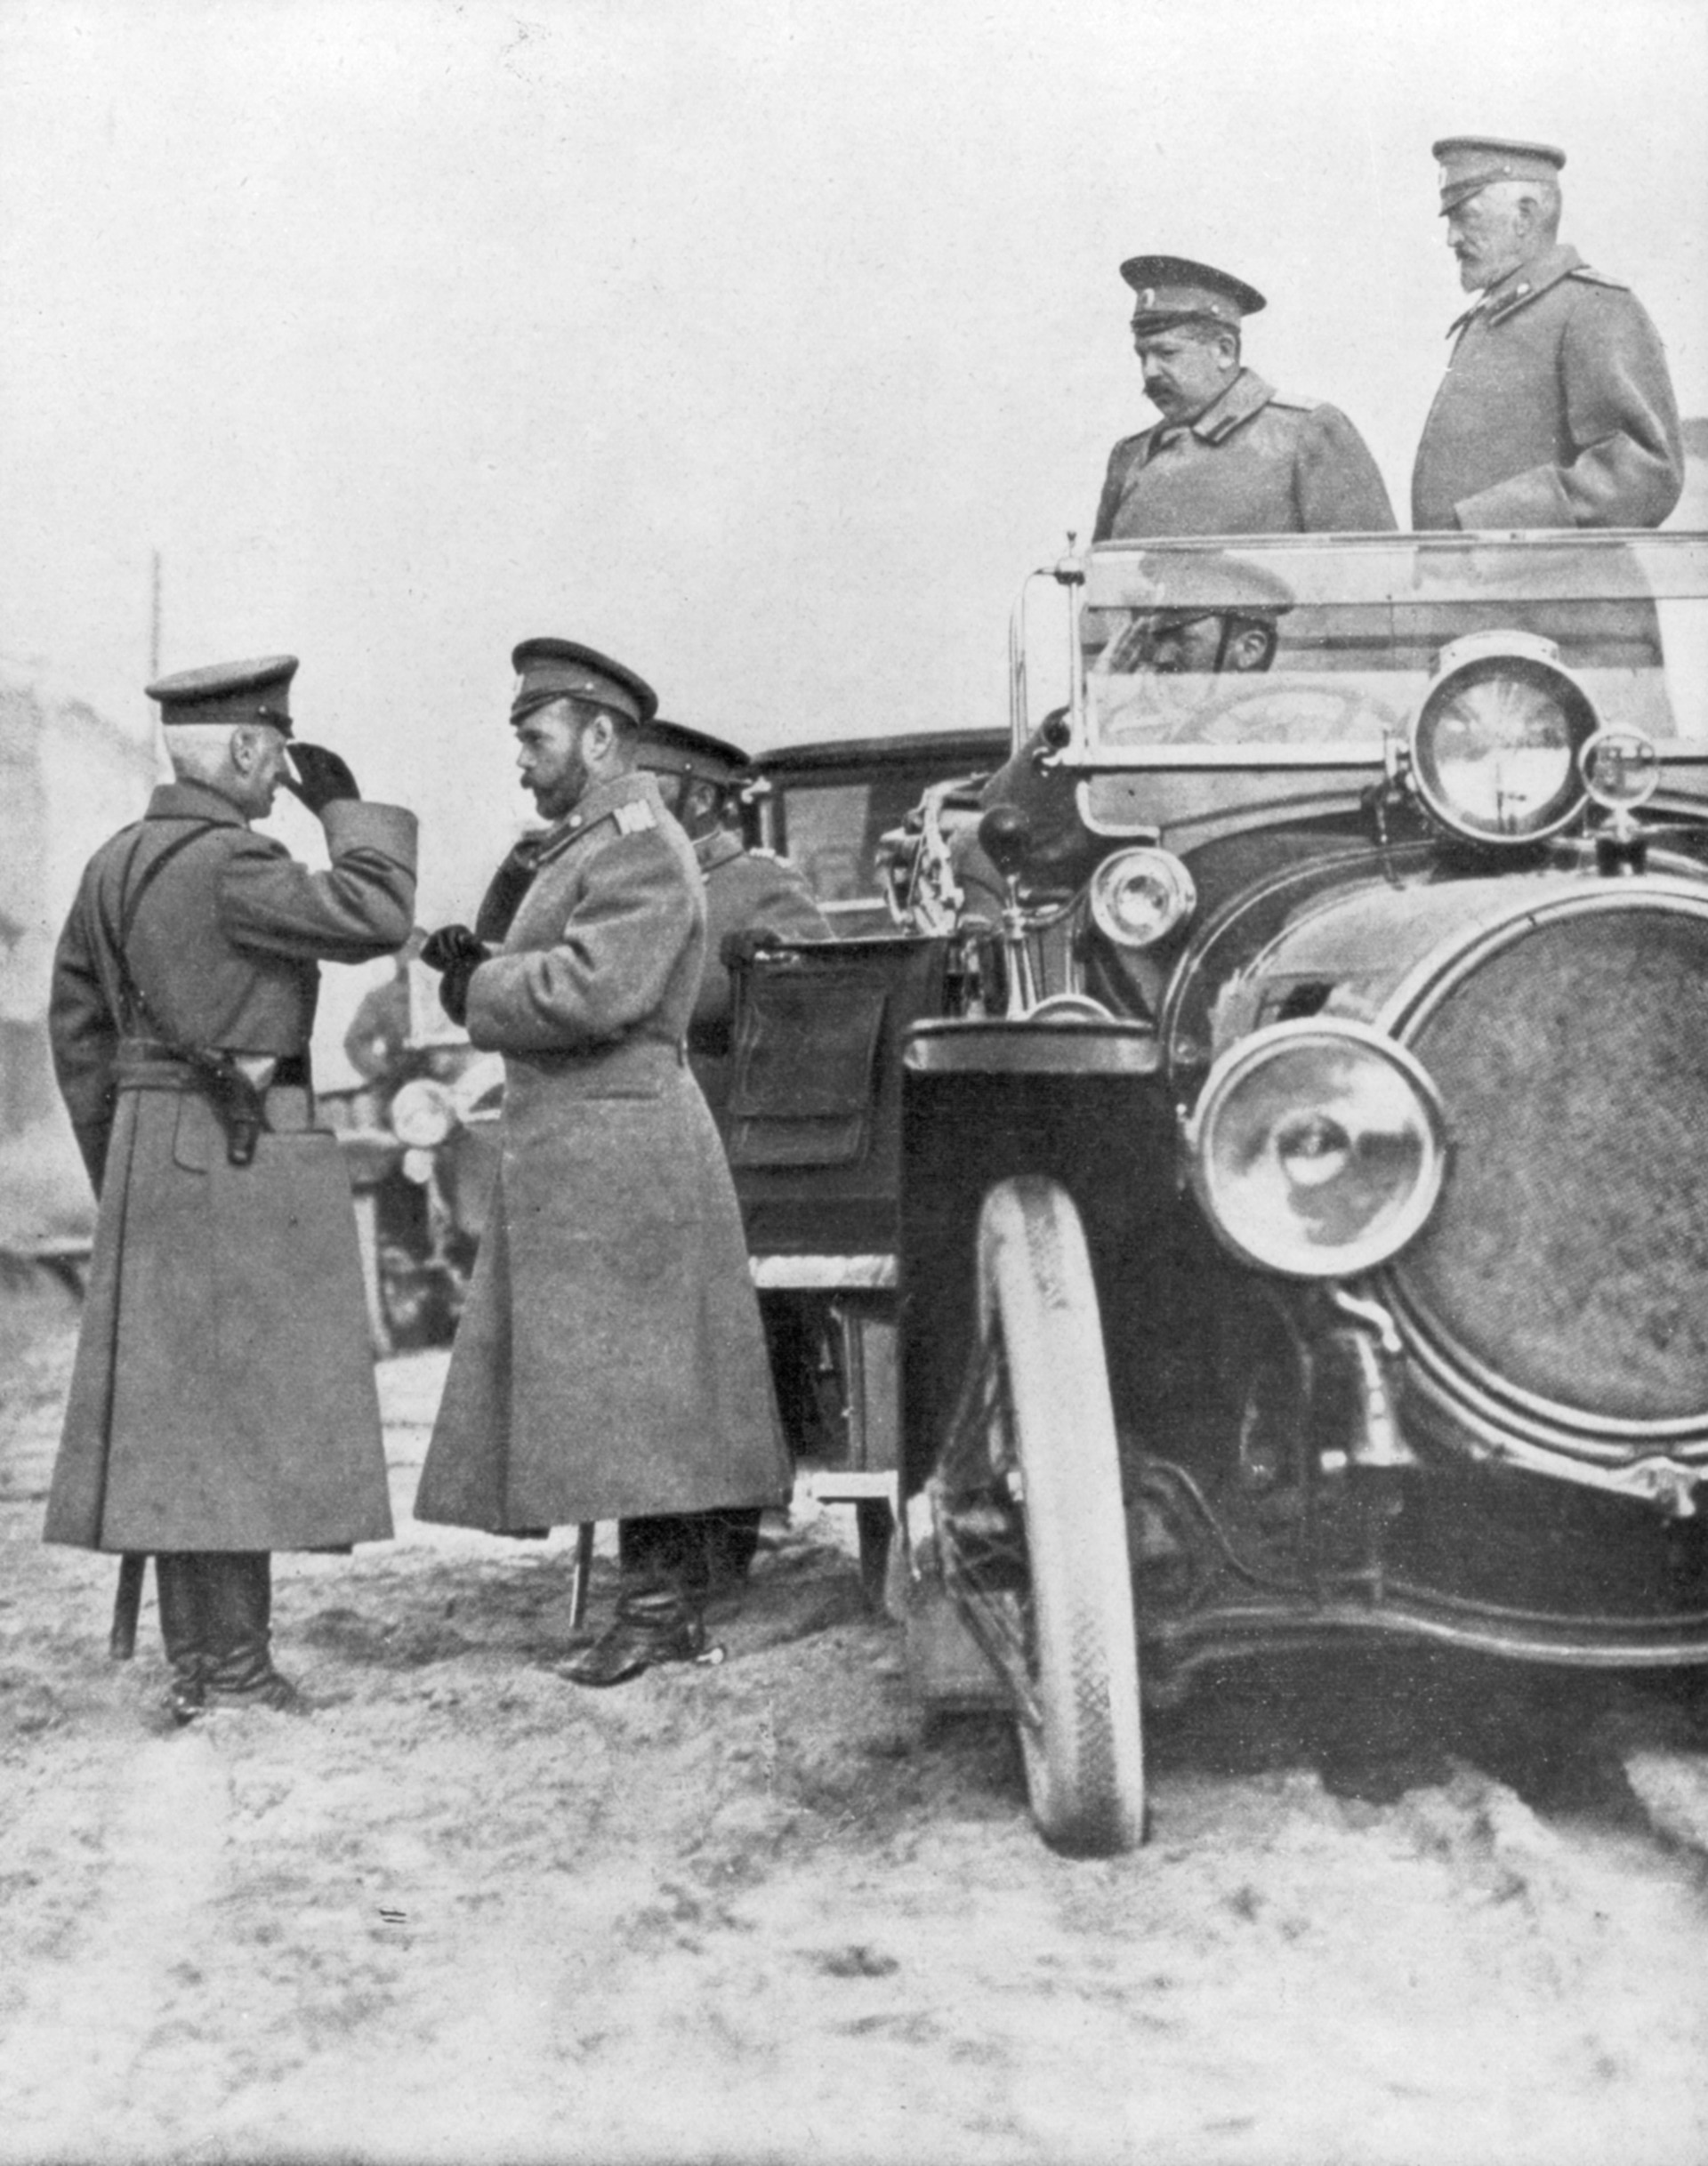 Tsar Nicholas II Visiting The Russian Front, May 1915
